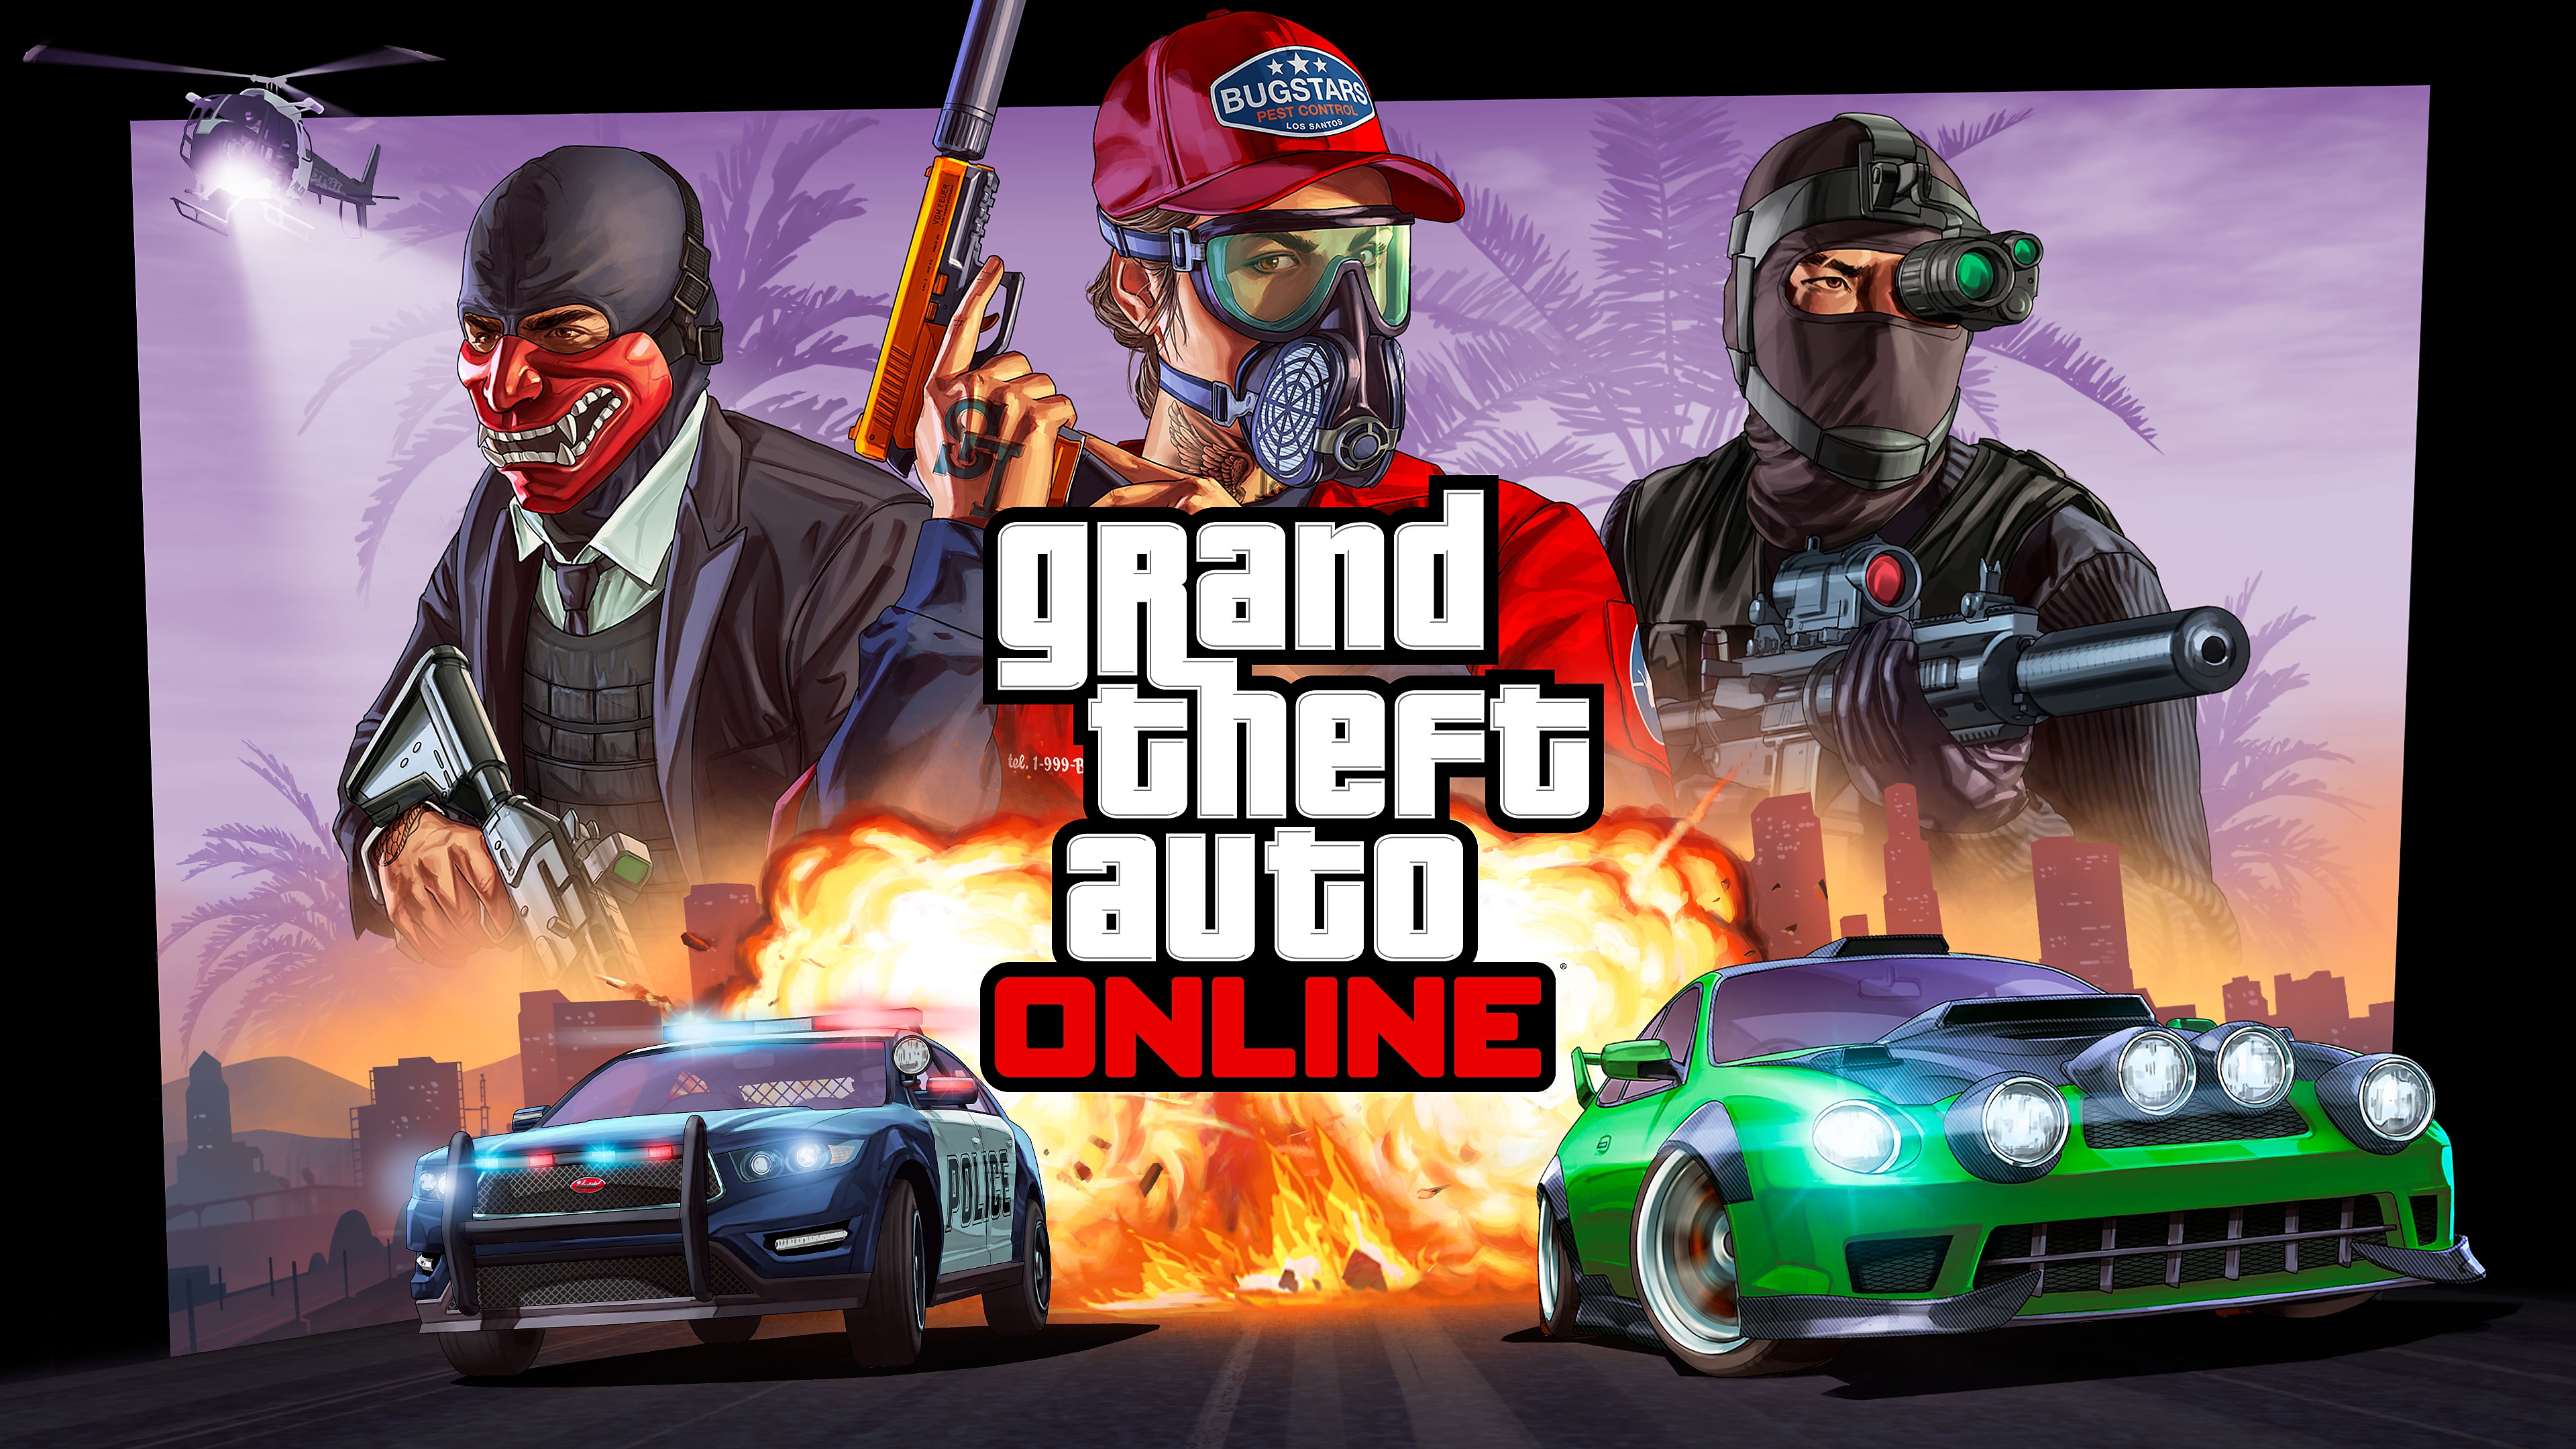 Grand Theft Auto Online - Arte principal mostrando um carro de corrida de rua perseguido pela polícia e três personagens na parte superior.